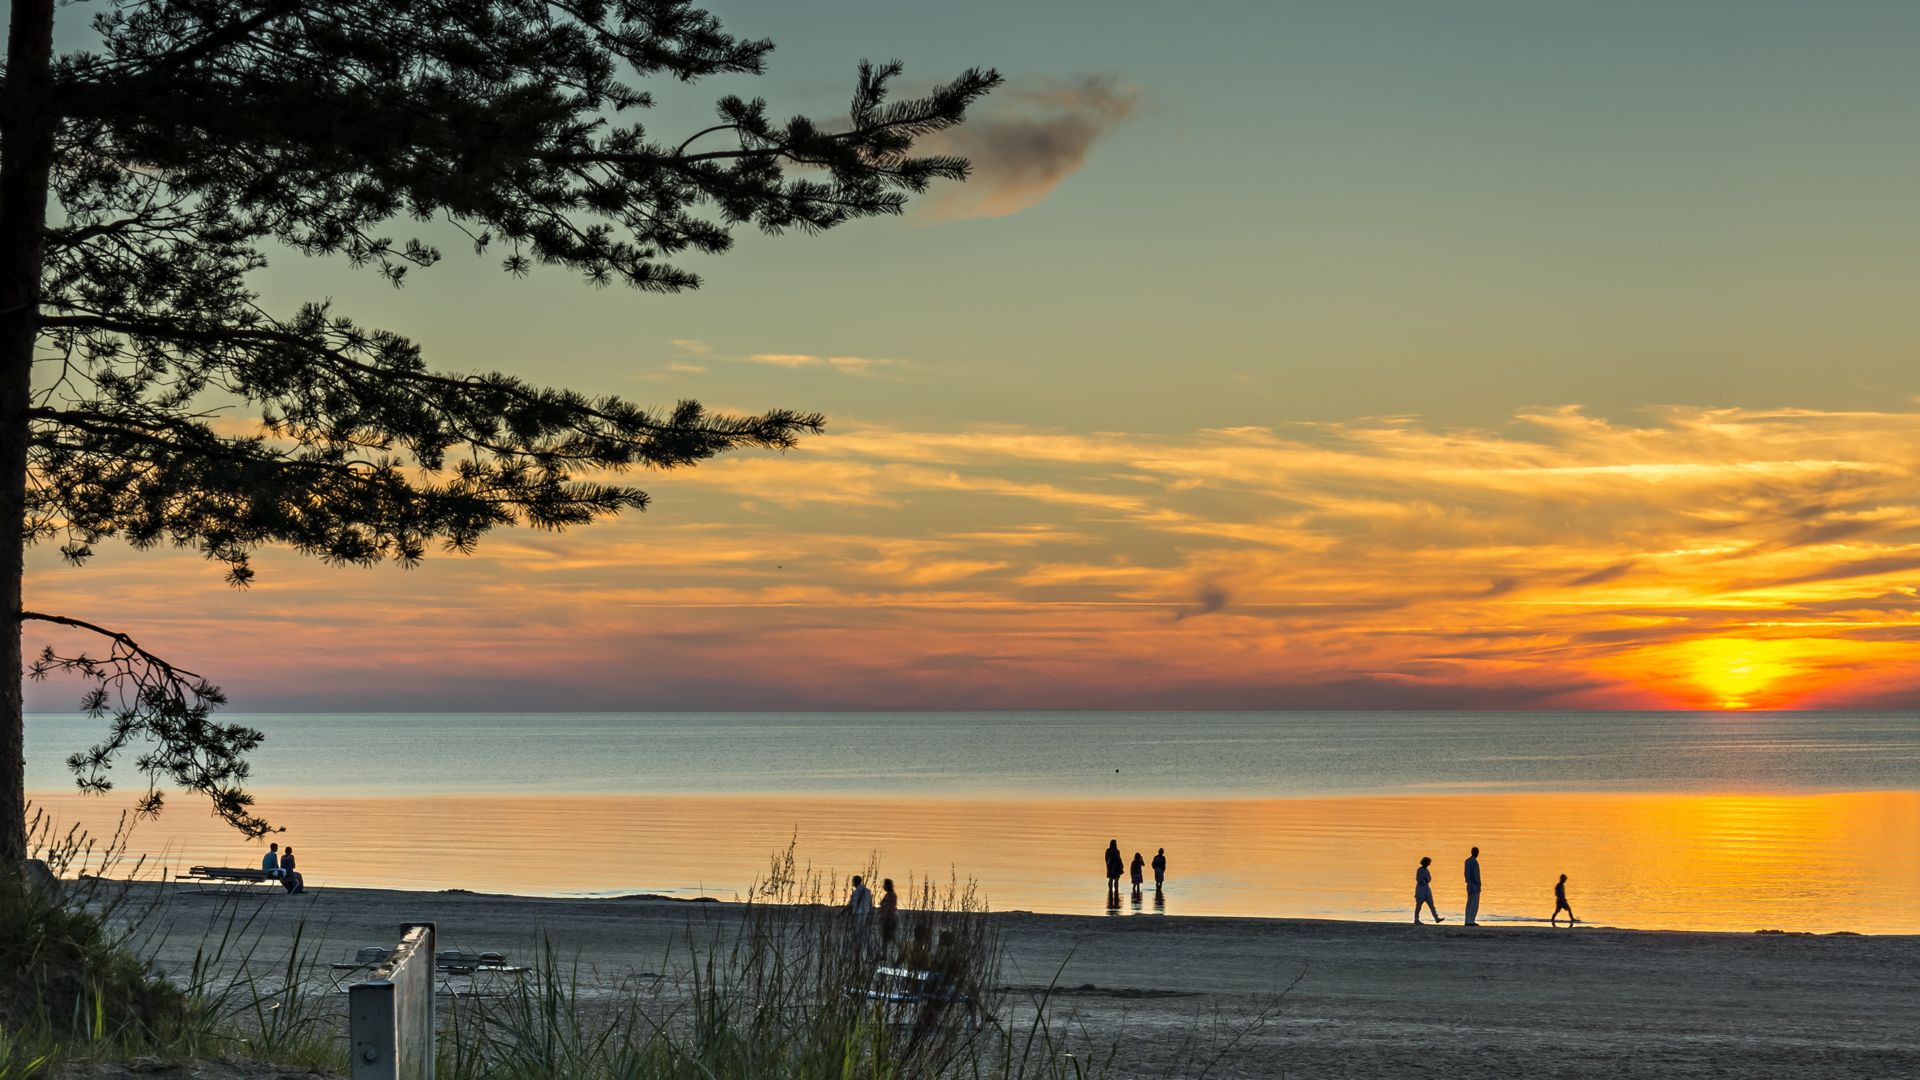 Spalvingas saulėlydis saulėtame paplūdimyje Jūrmaloje – garsiame Baltijos regiono kurorte (Latvija)